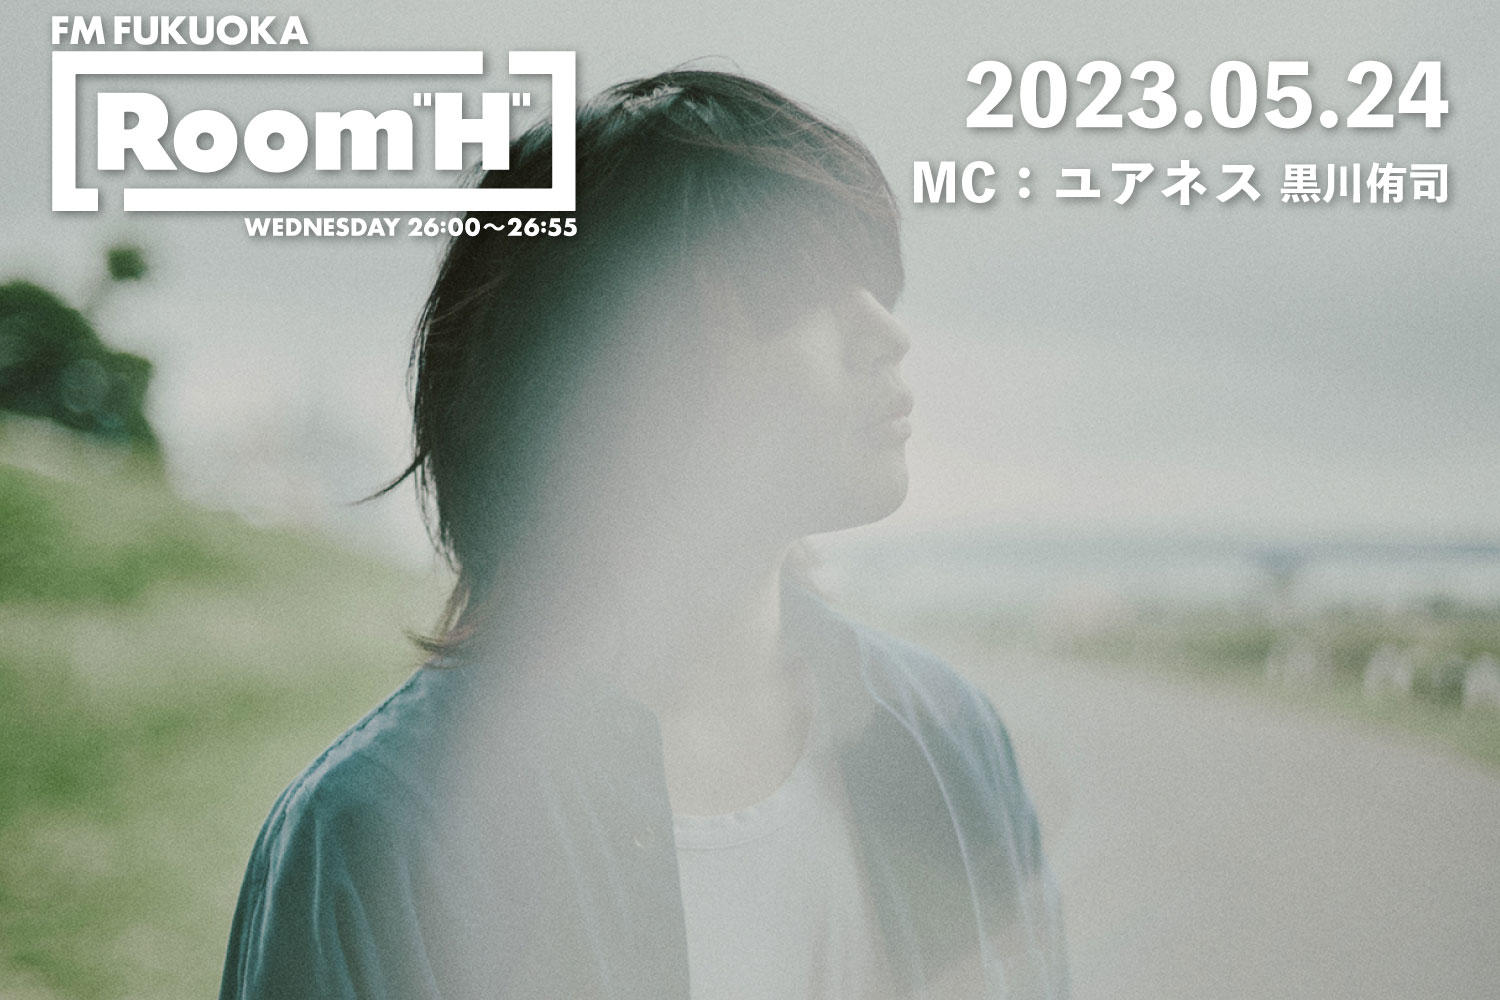 【読むラジオ】MC：黒川侑司(ユアネス) 最近のお気に入りの曲たちを紹介！「Room H」-2023.05.24-